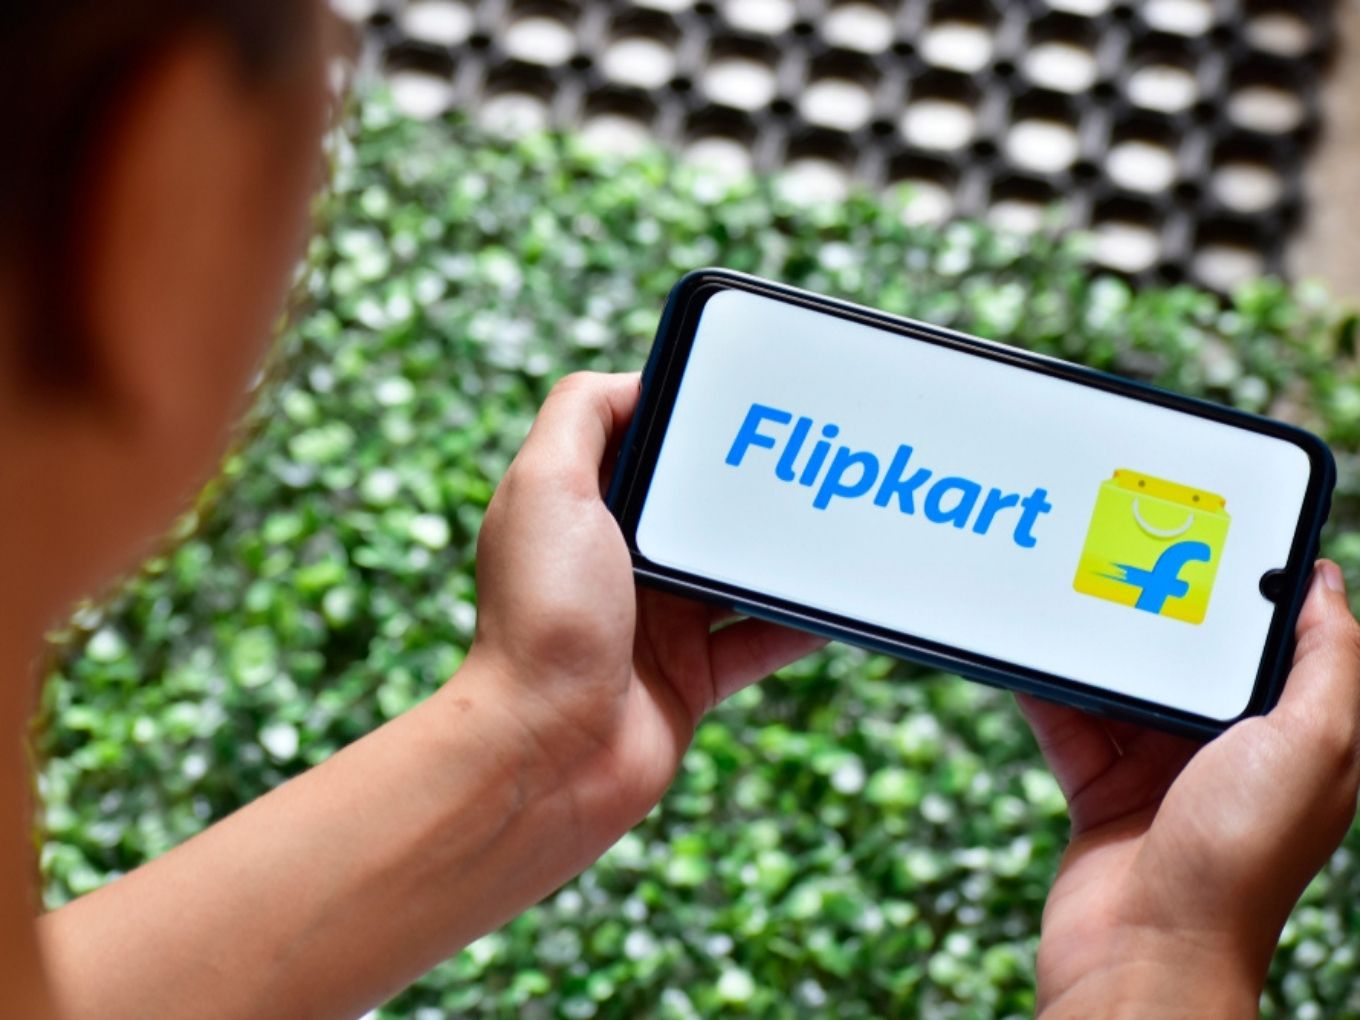 Flipkart To Scrap FarmerMart, After DPIIT Rejection